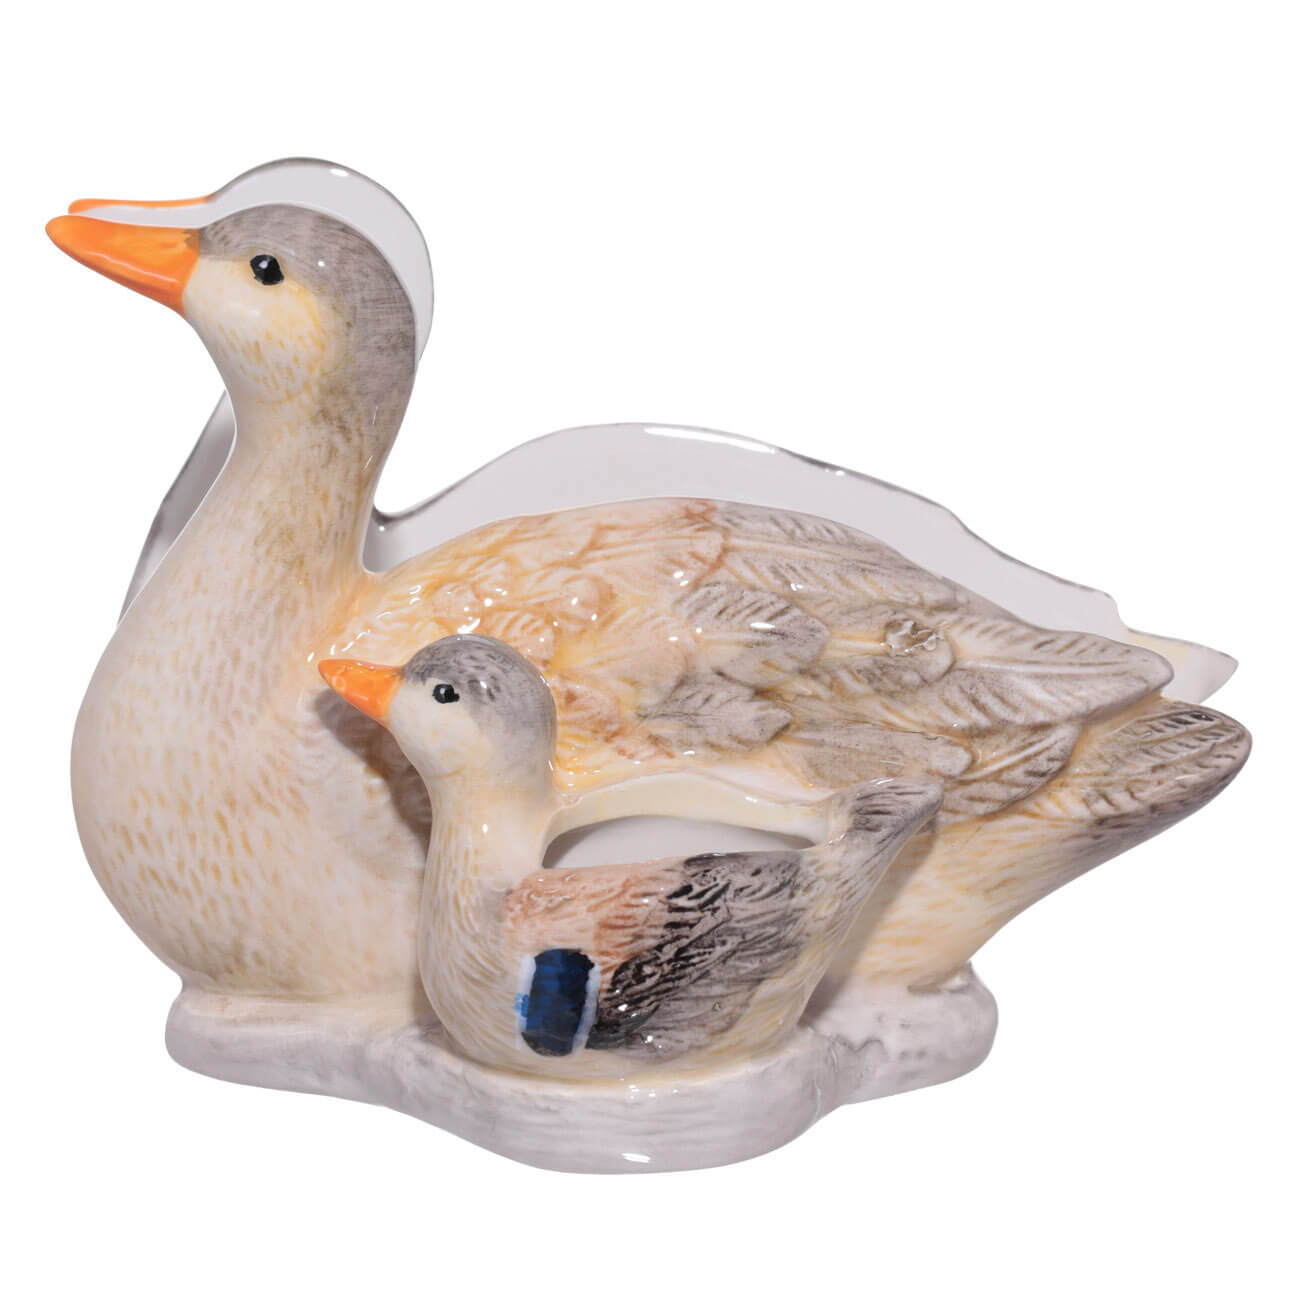 салфетница 15 см с отделением для зубочисток керамика белая утка с утенком duck Салфетница, 15 см, с отделением для зубочисток, керамика, Утка с утенком, Duck